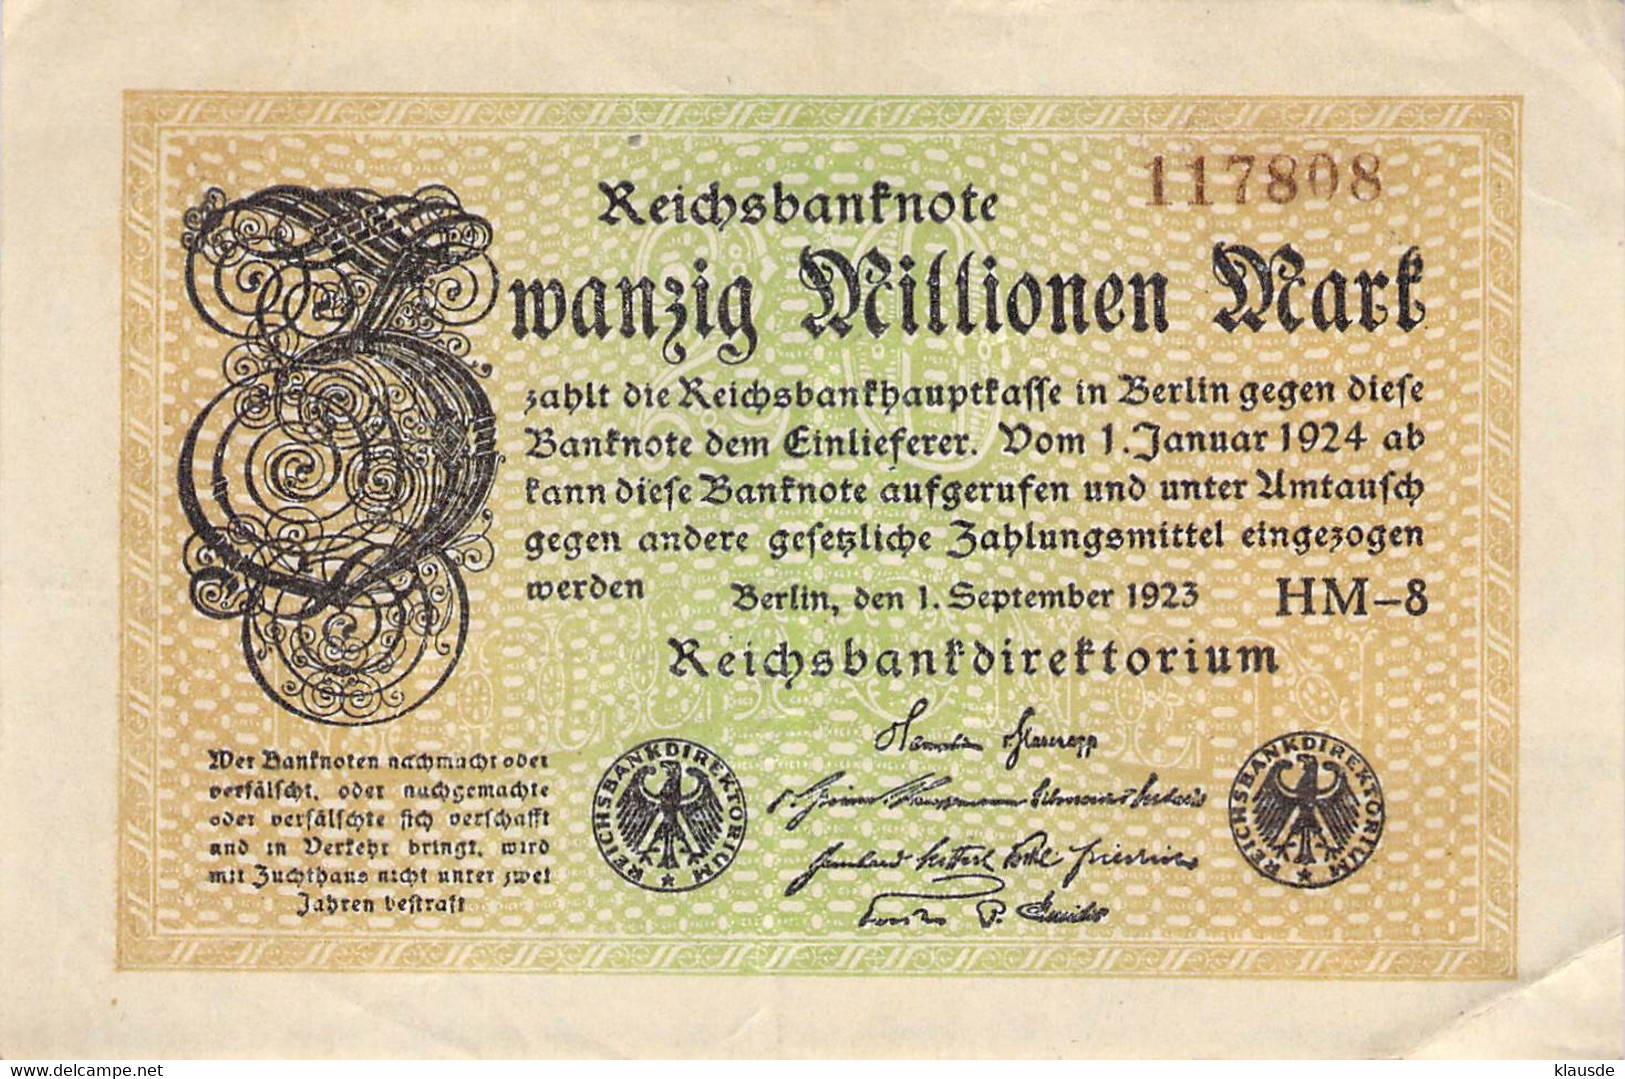 20 Mio Mark Reichsbanknote VF/F (III) - 20 Miljoen Mark